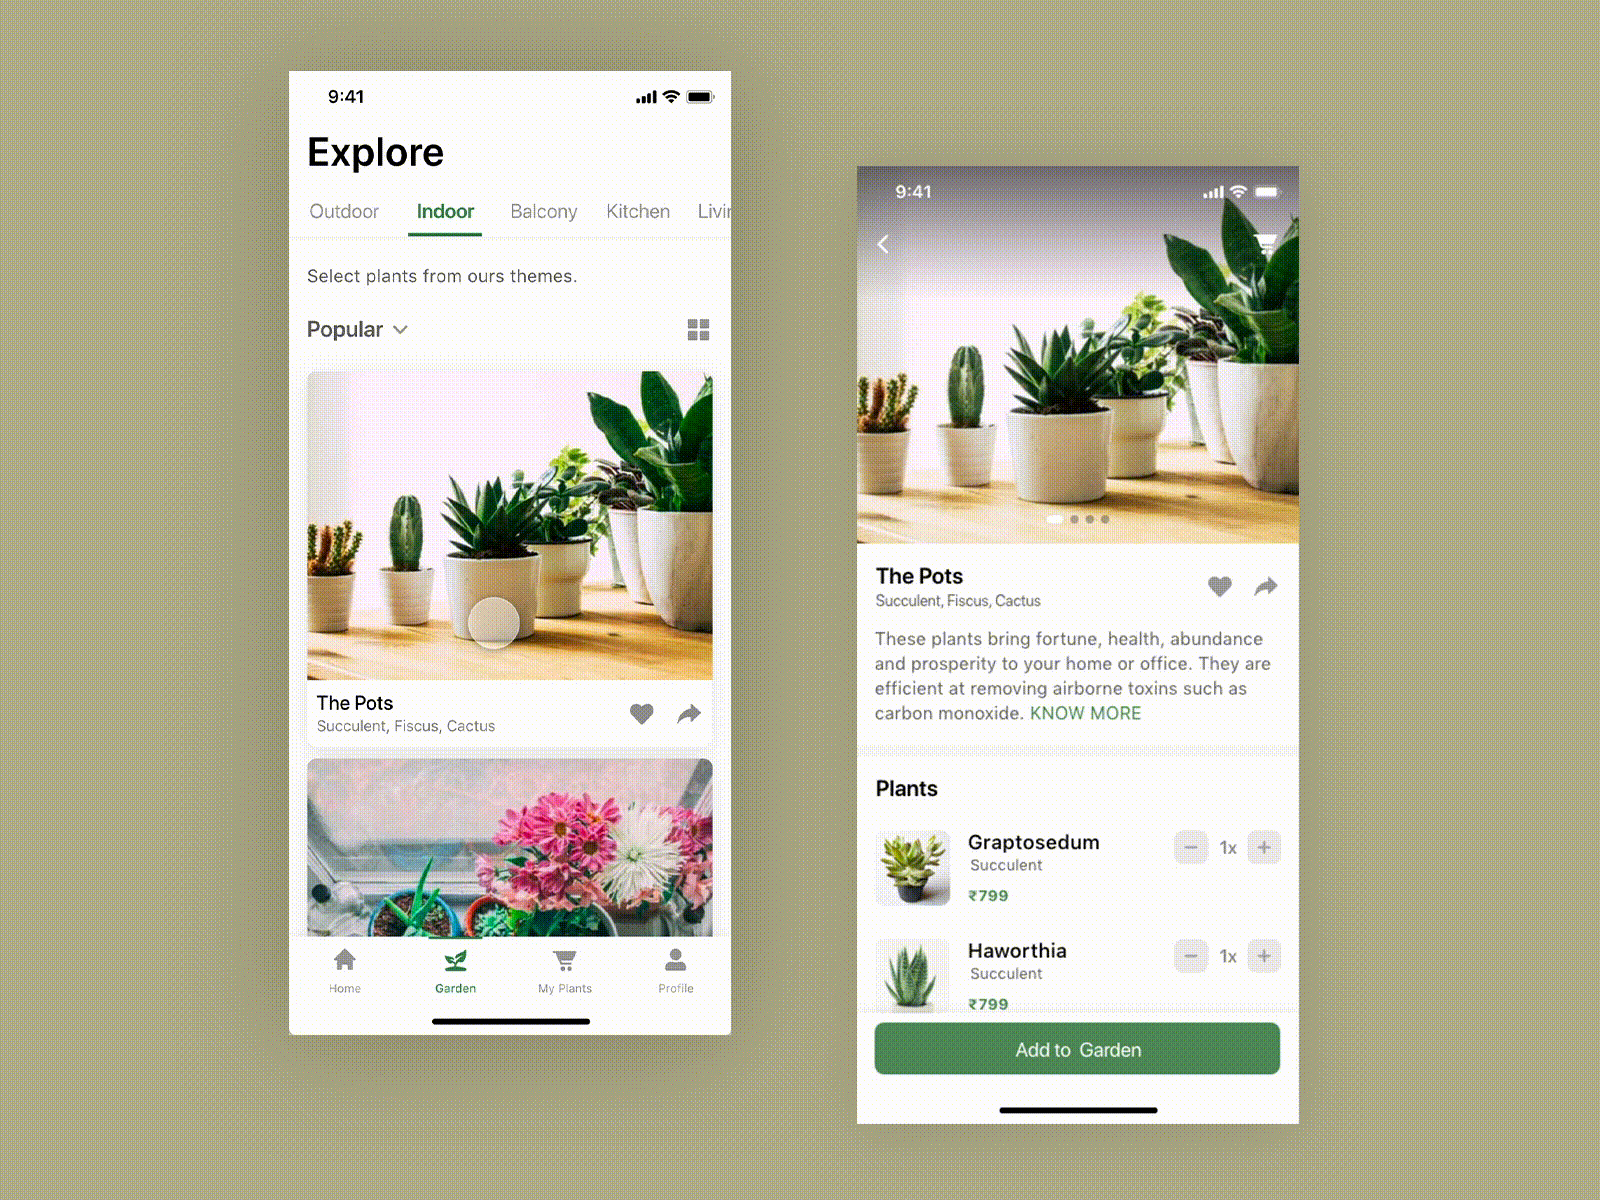 Planto - Explore ecommerce garden plant app plant shop theme design ui ux